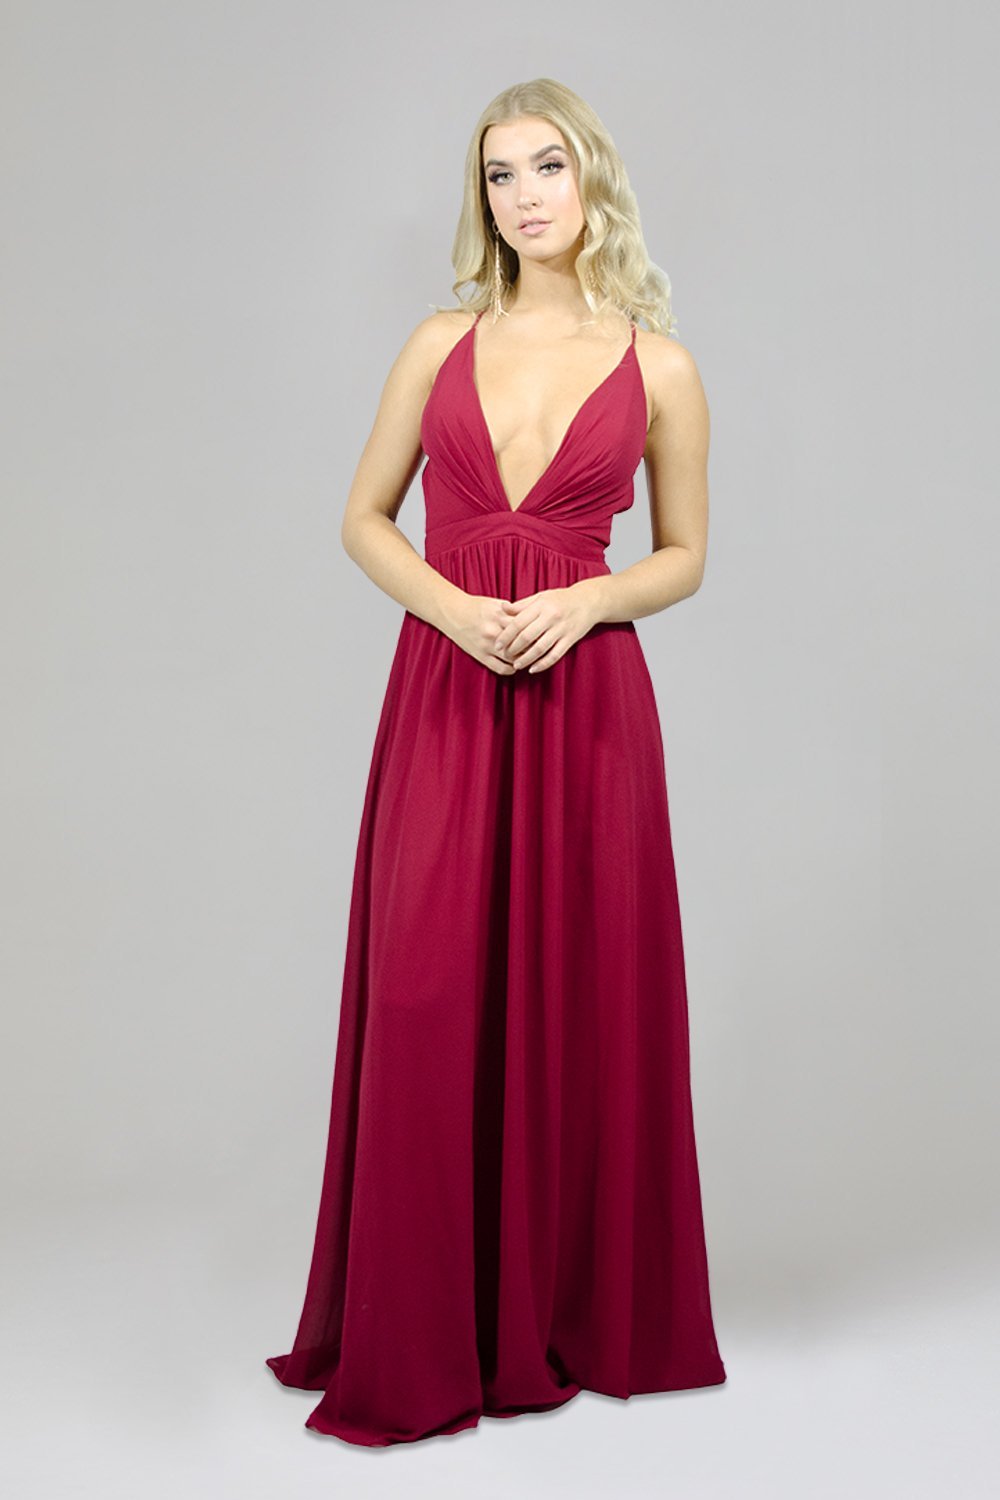 chiffon red bridesmaid dresses custom made perth australia envious bridal & formal